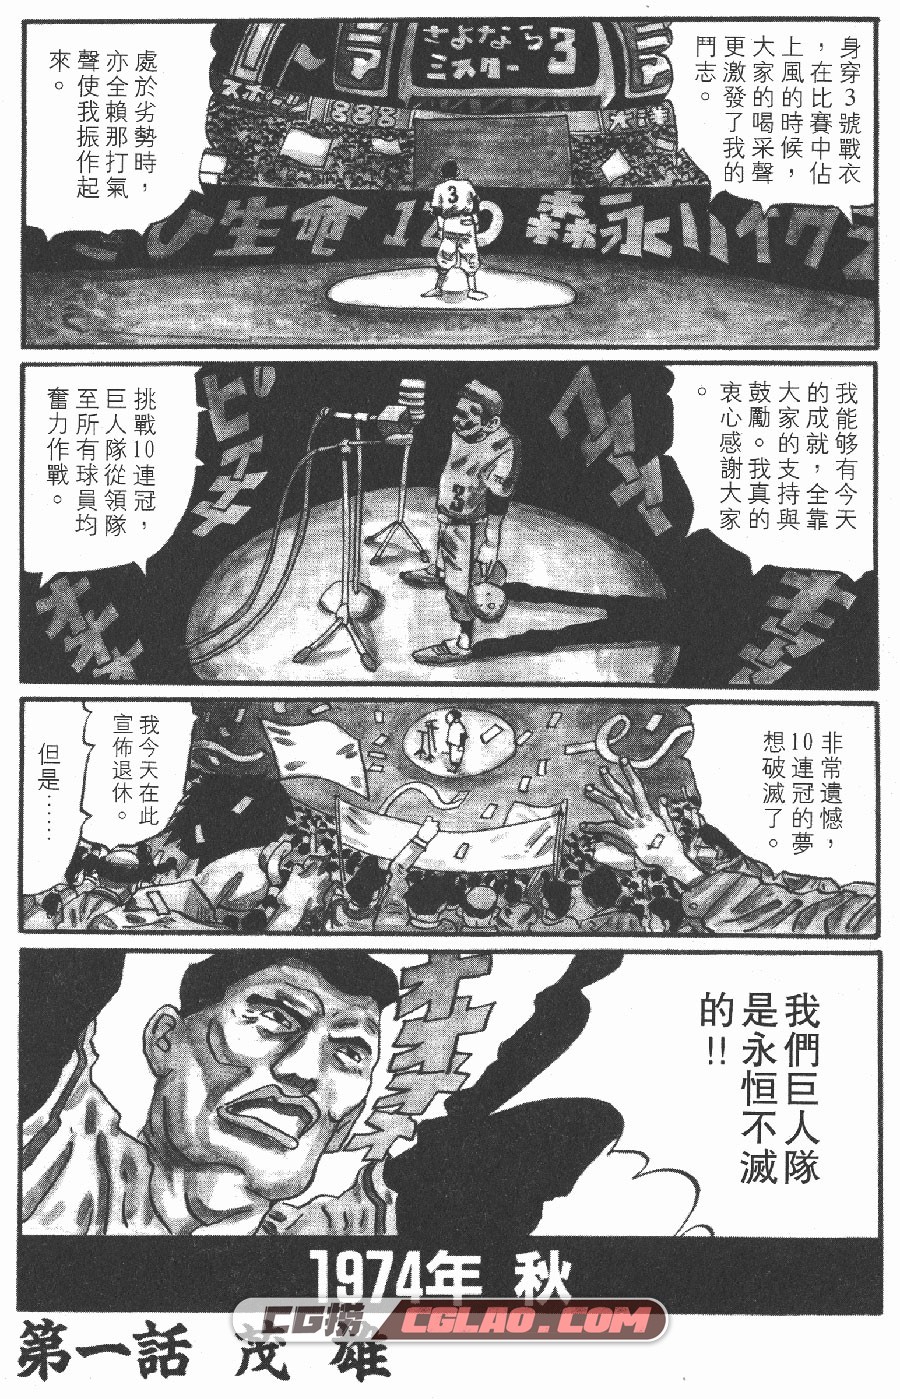 花男 松本大洋 1-3卷 漫画完结全集下载 百度网盘,_FM01-_0003.jpg